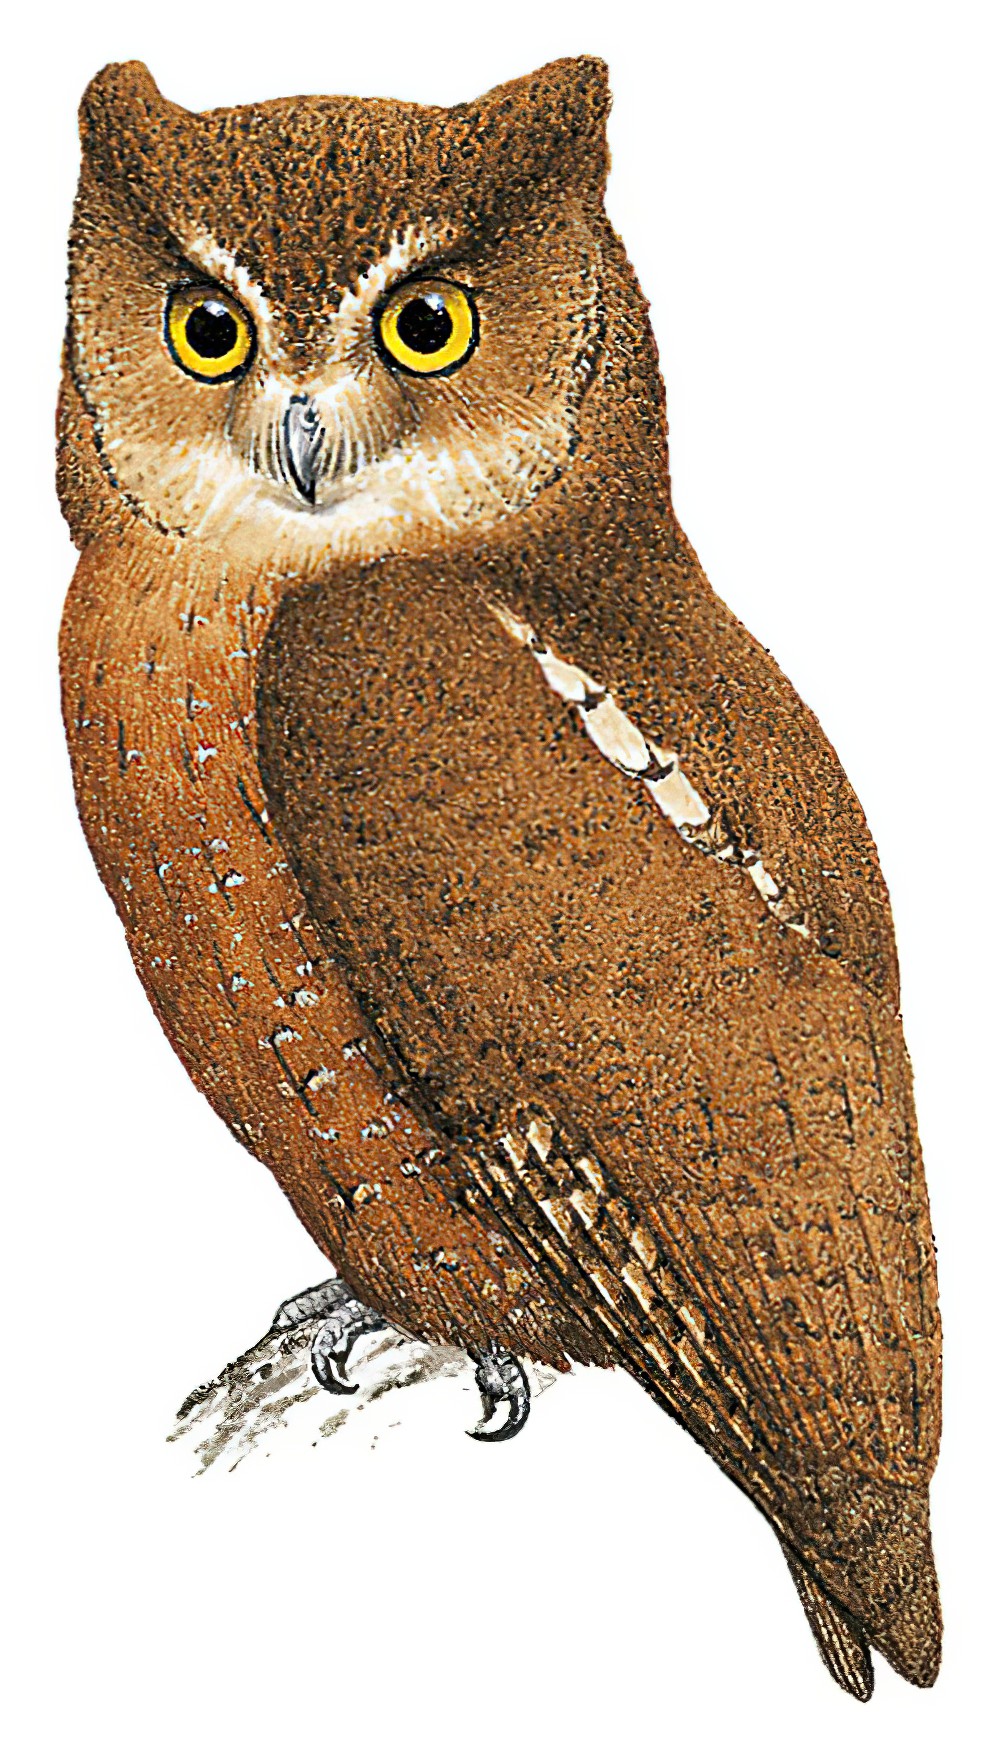 Enggano Scops-Owl / Otus enganensis